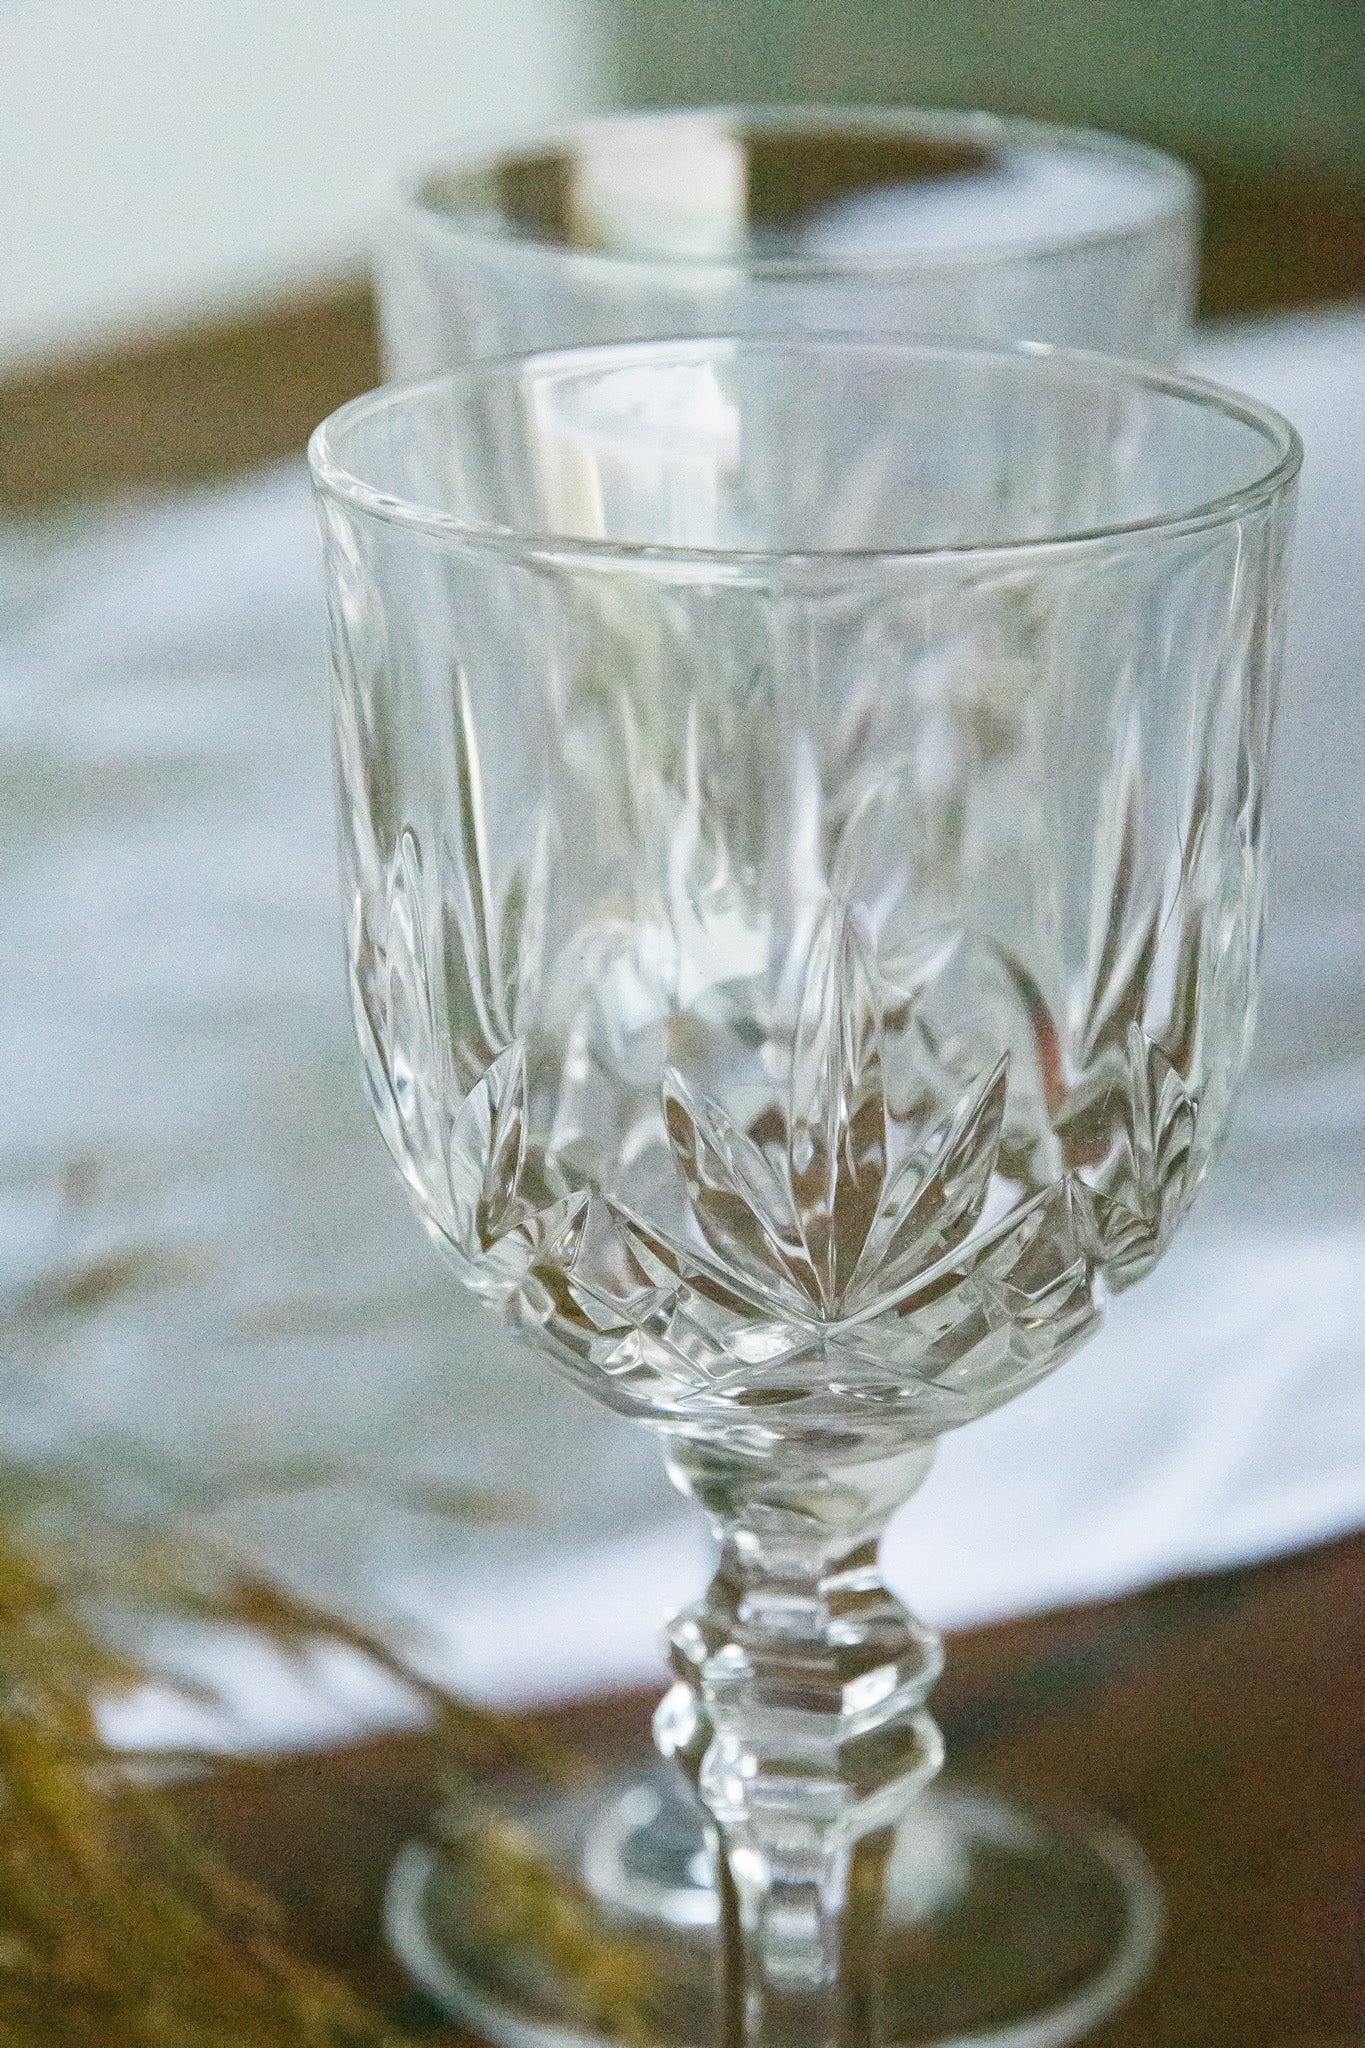 4 verres en cristal ciselés, anciens verres à vin mais la contenance correspond mieux à des verres à eau pour une utilisation moderne.